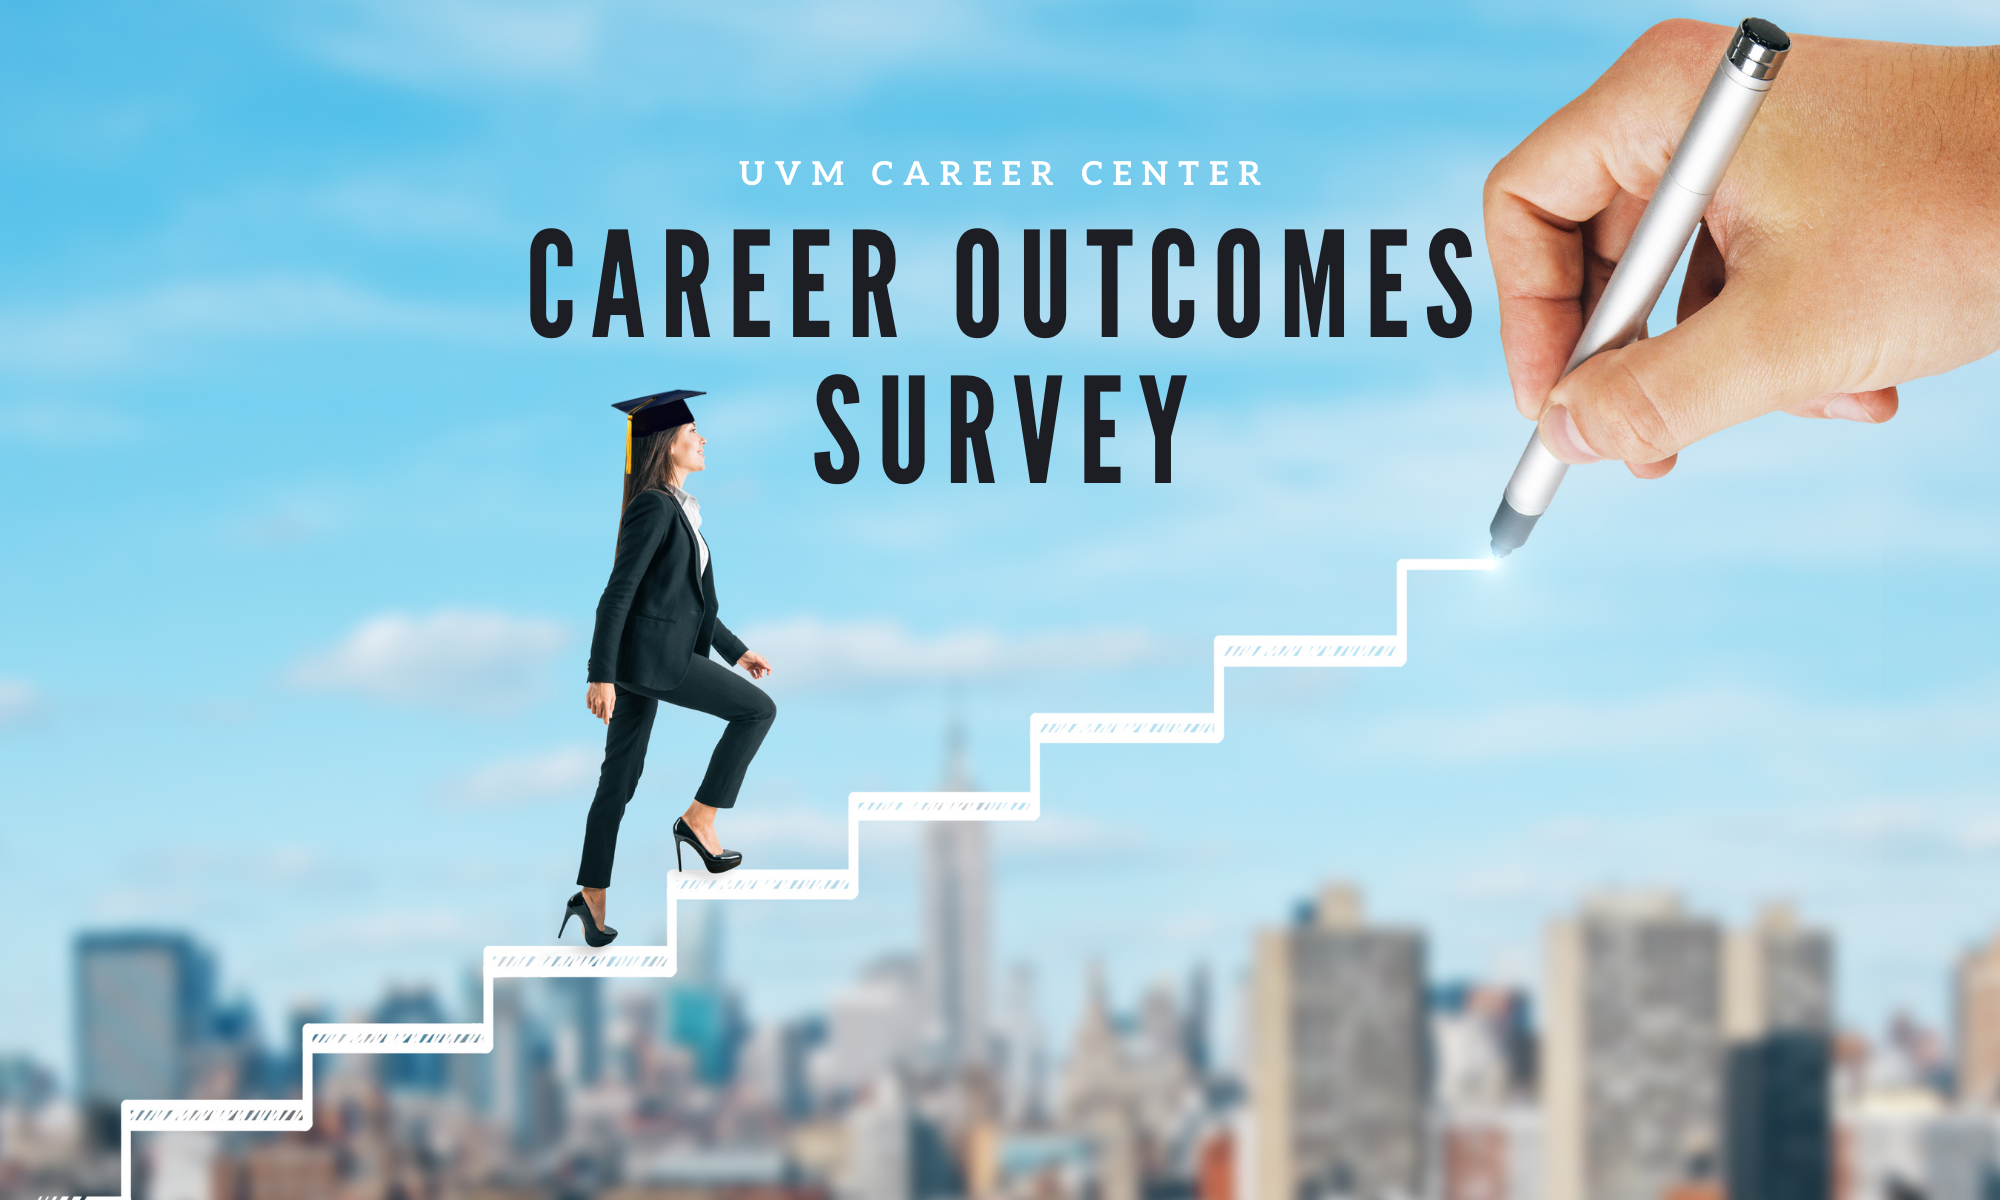 UVM Career Center Career Outcomes Survey Image